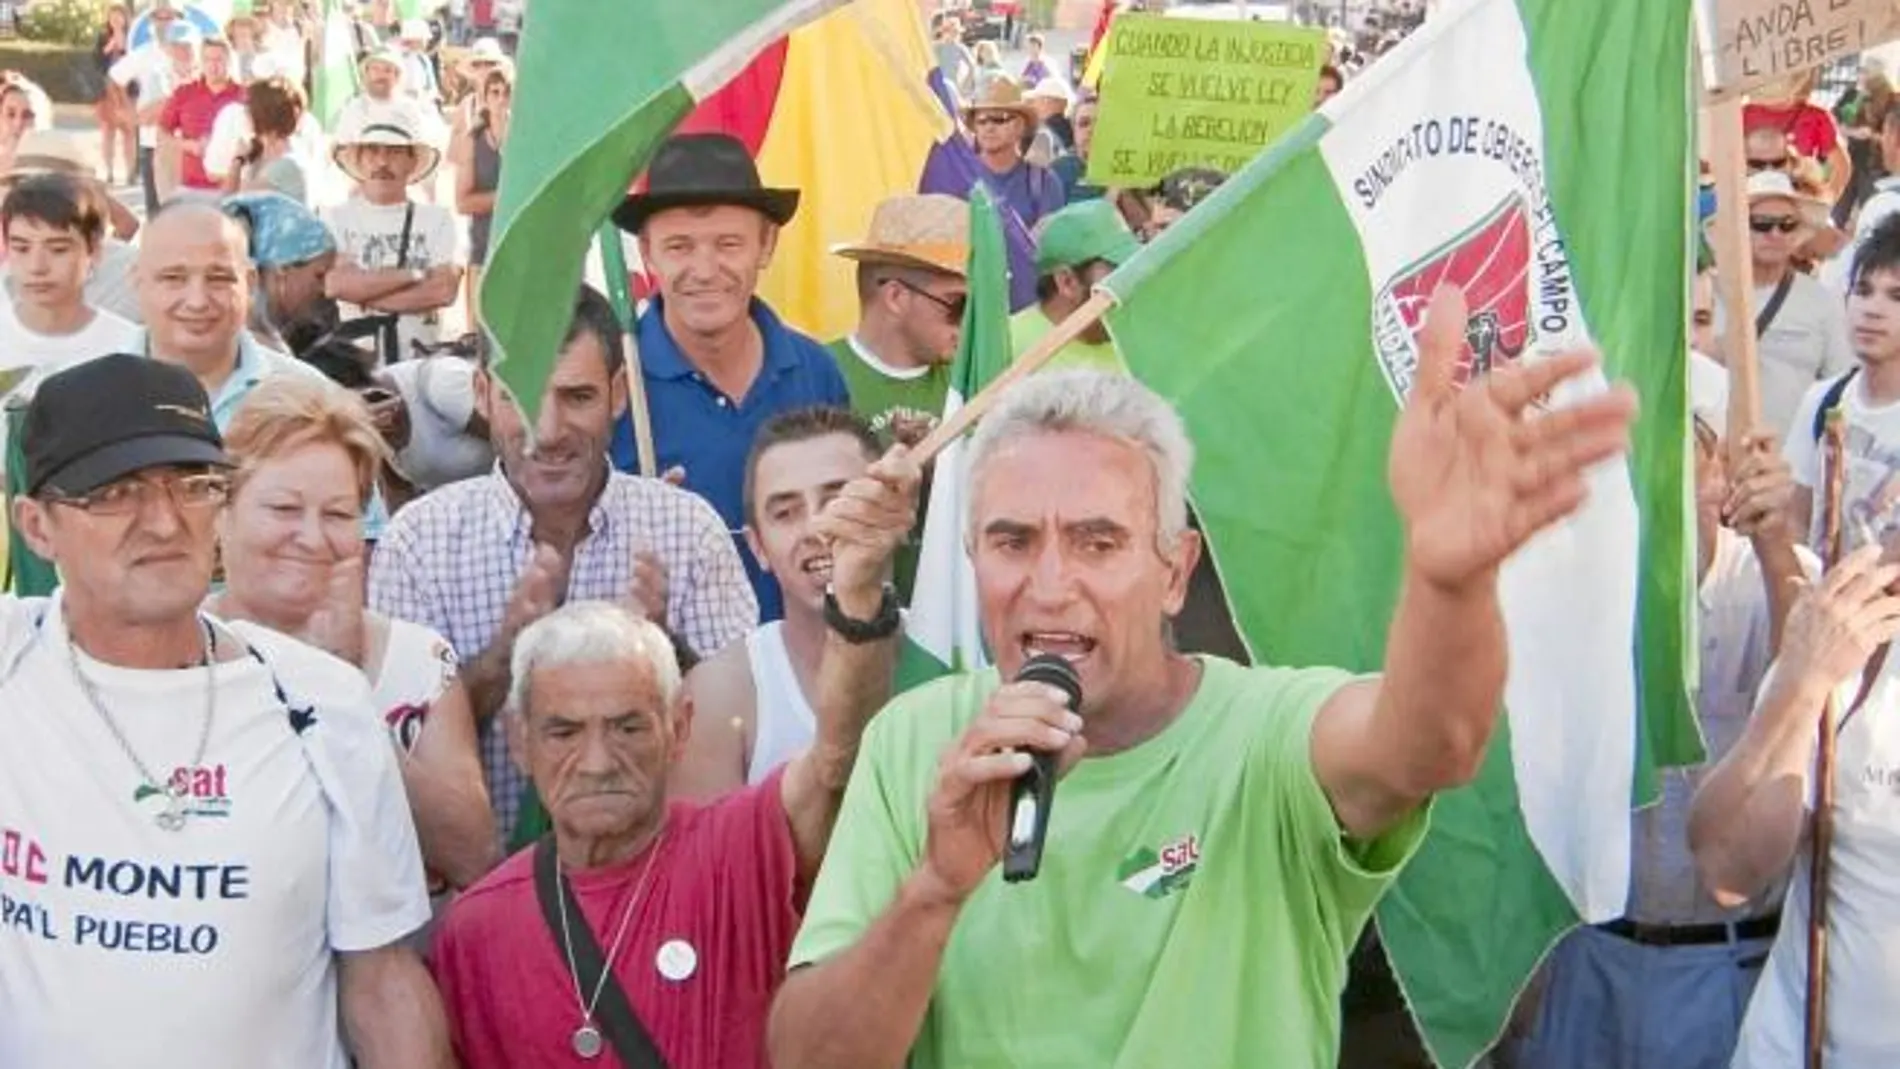 El portavoz del sindicato SAT, Diego Cañamero, asegura que seguirá «ejerciendo la vida sindical» tras la nueva detención